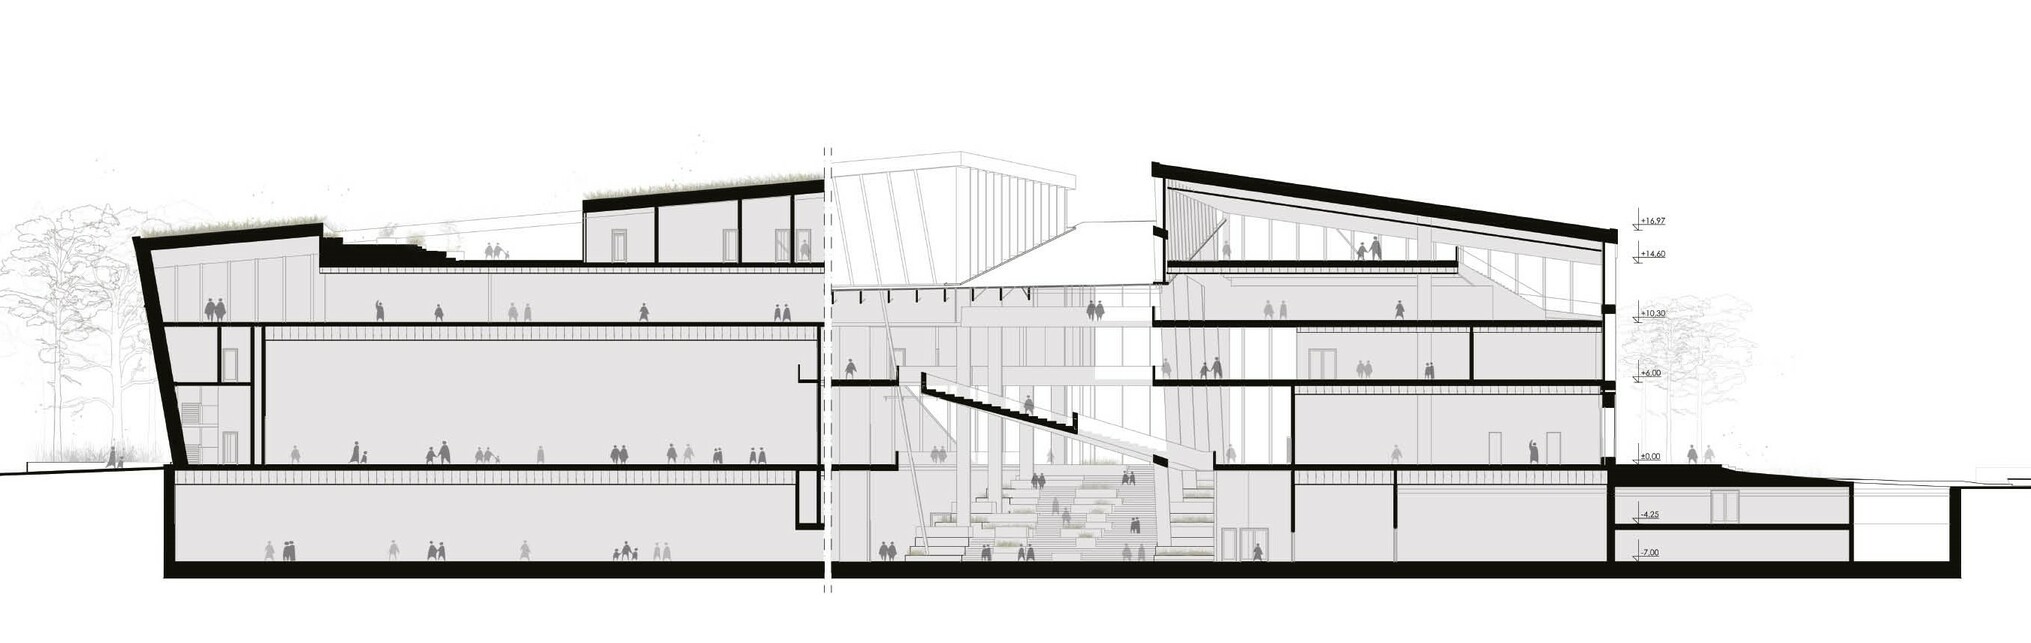 Metszet, az épület térbeli struktúrája – Tartu Belvárosi Kulturális Központ és környezetének építészeti tervpályázata – tervező: DVM group, 4D Tájépítész Iroda – forrás: DVM group
